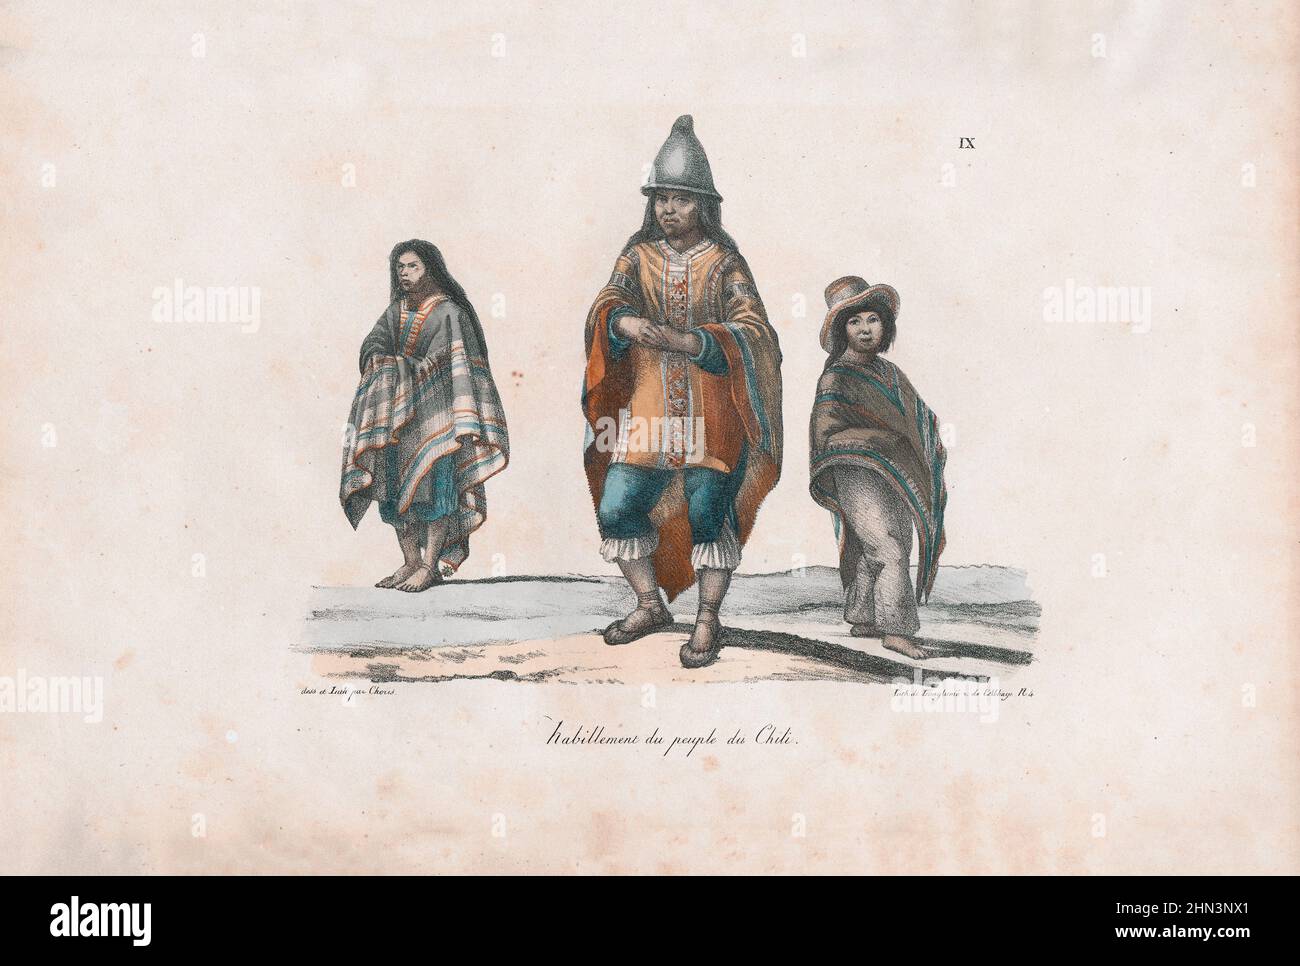 Farblithographie von Kleidung der Menschen in Chile. 1822, von Louis Choris. Stockfoto